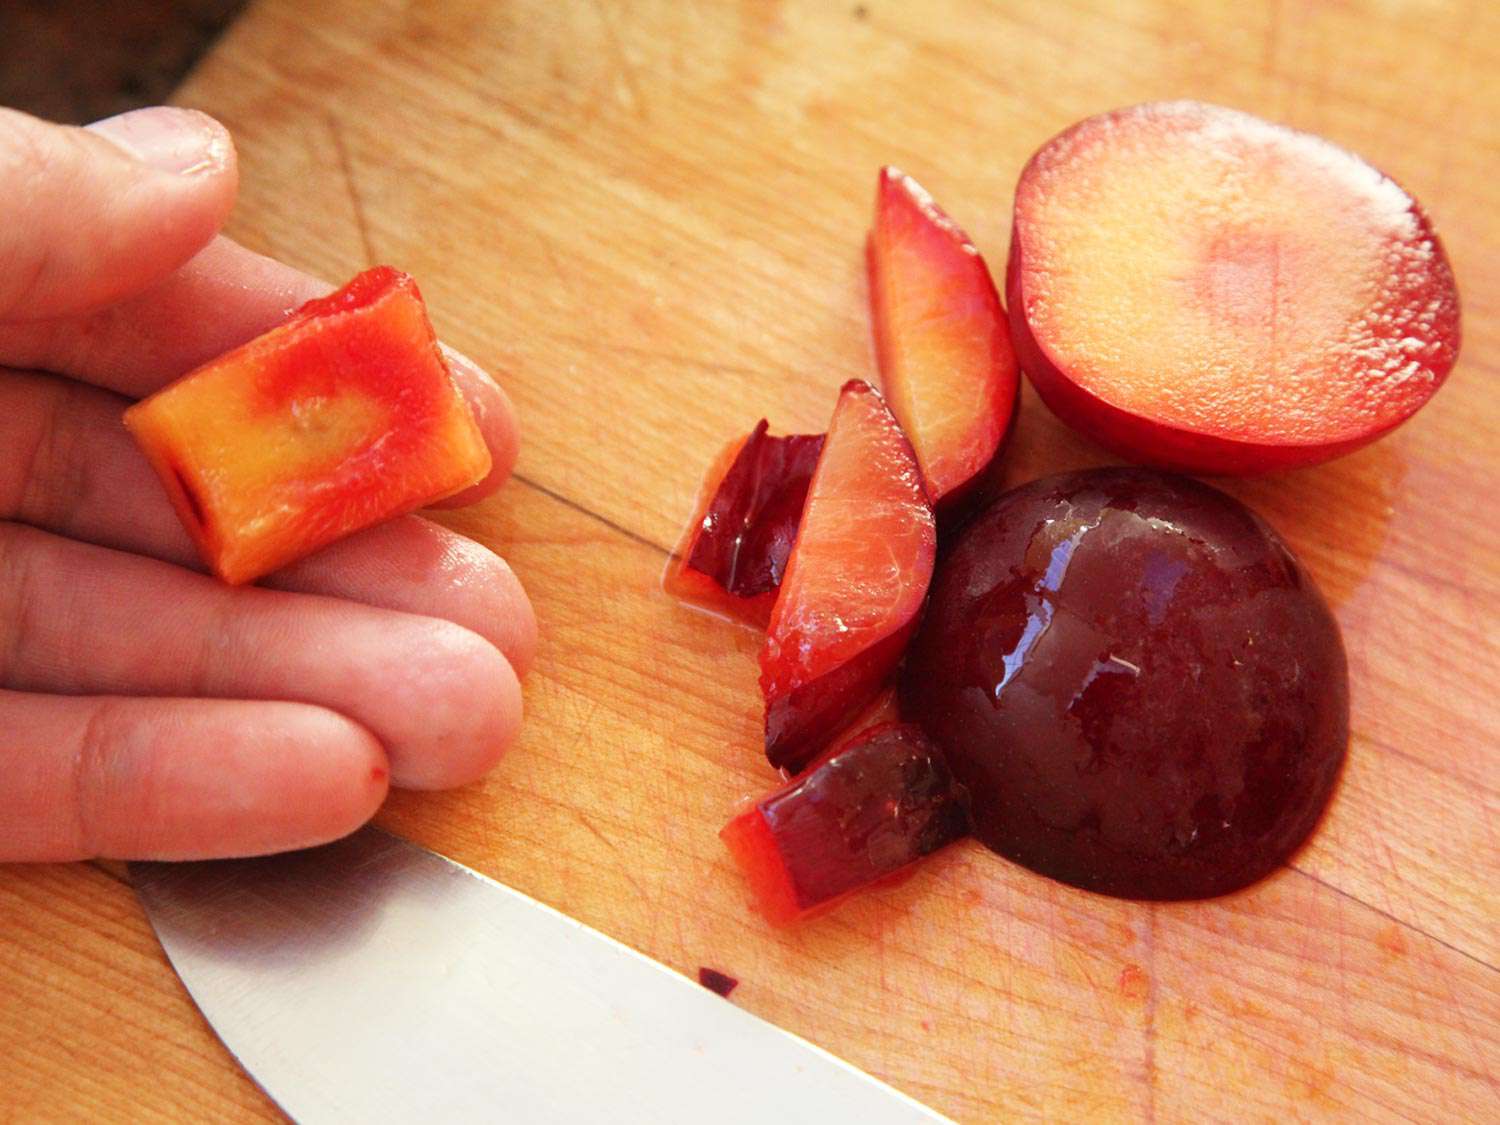 一只手拿着一个李子核，周围有一些水果，旁边的木板上放着切好的水果